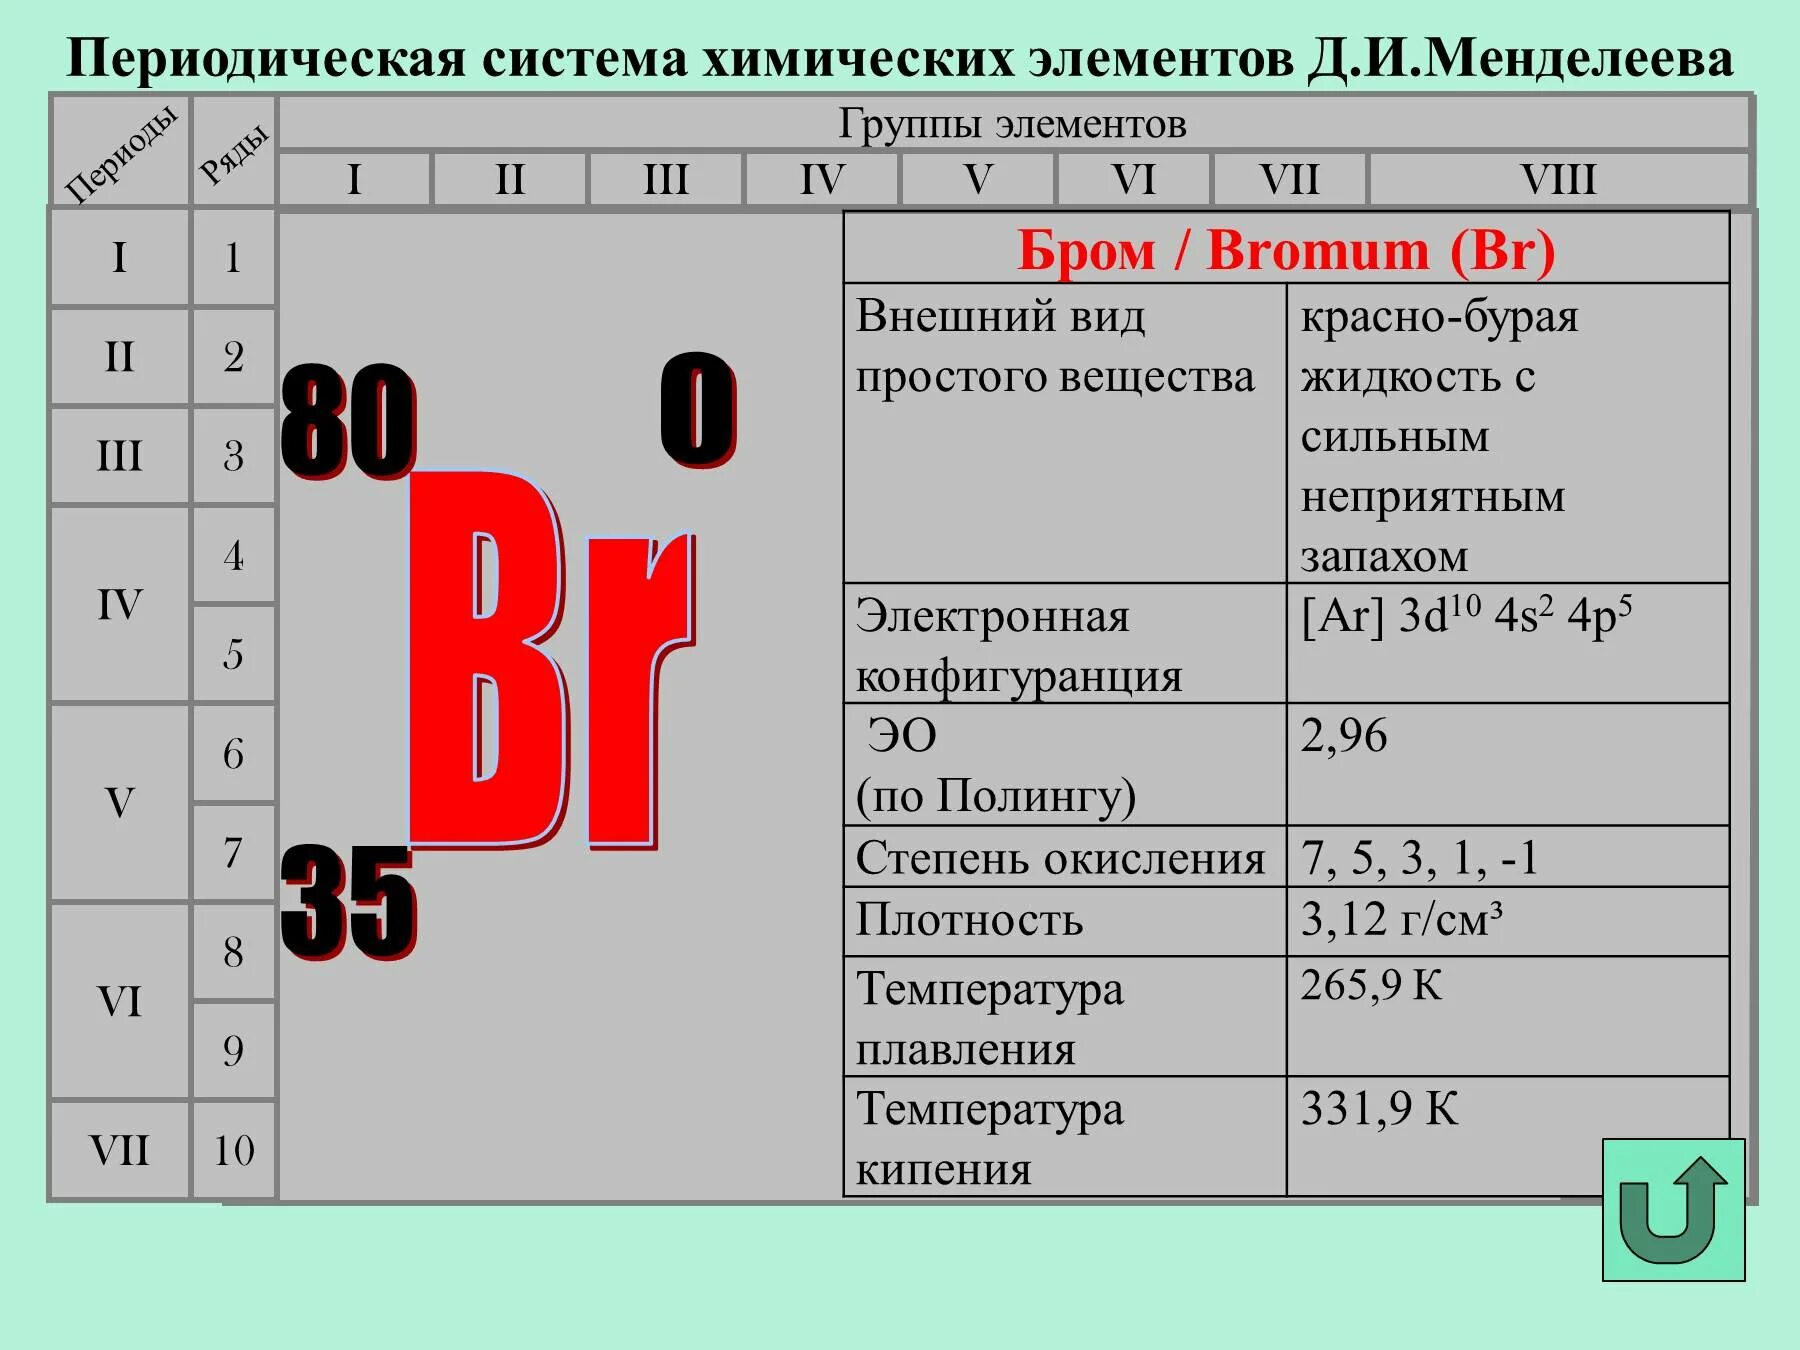 Br номер элемента. Бром положение в периодической системе. Характеристика химического элемента. Положение брома в периодической системе Менделеева. Бром химический элемент характеристика.